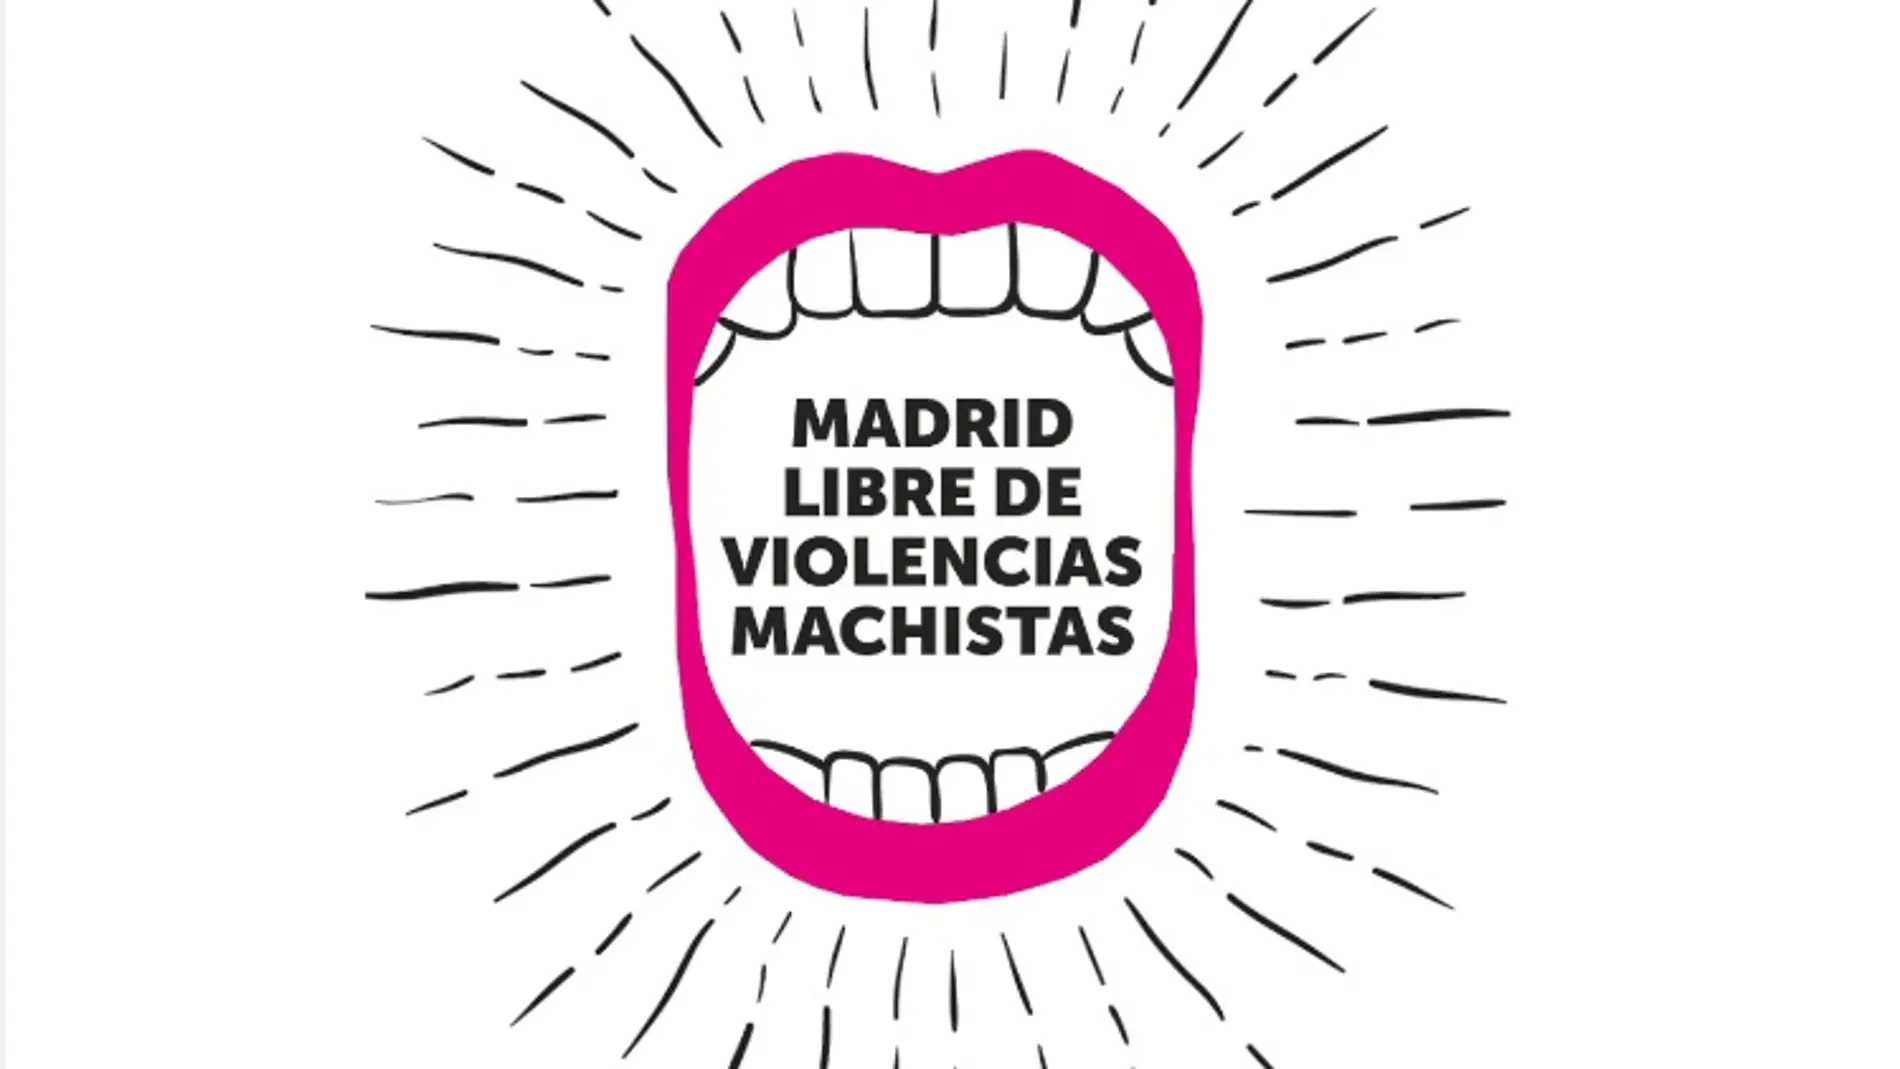 Madrid libre de violencias machistas